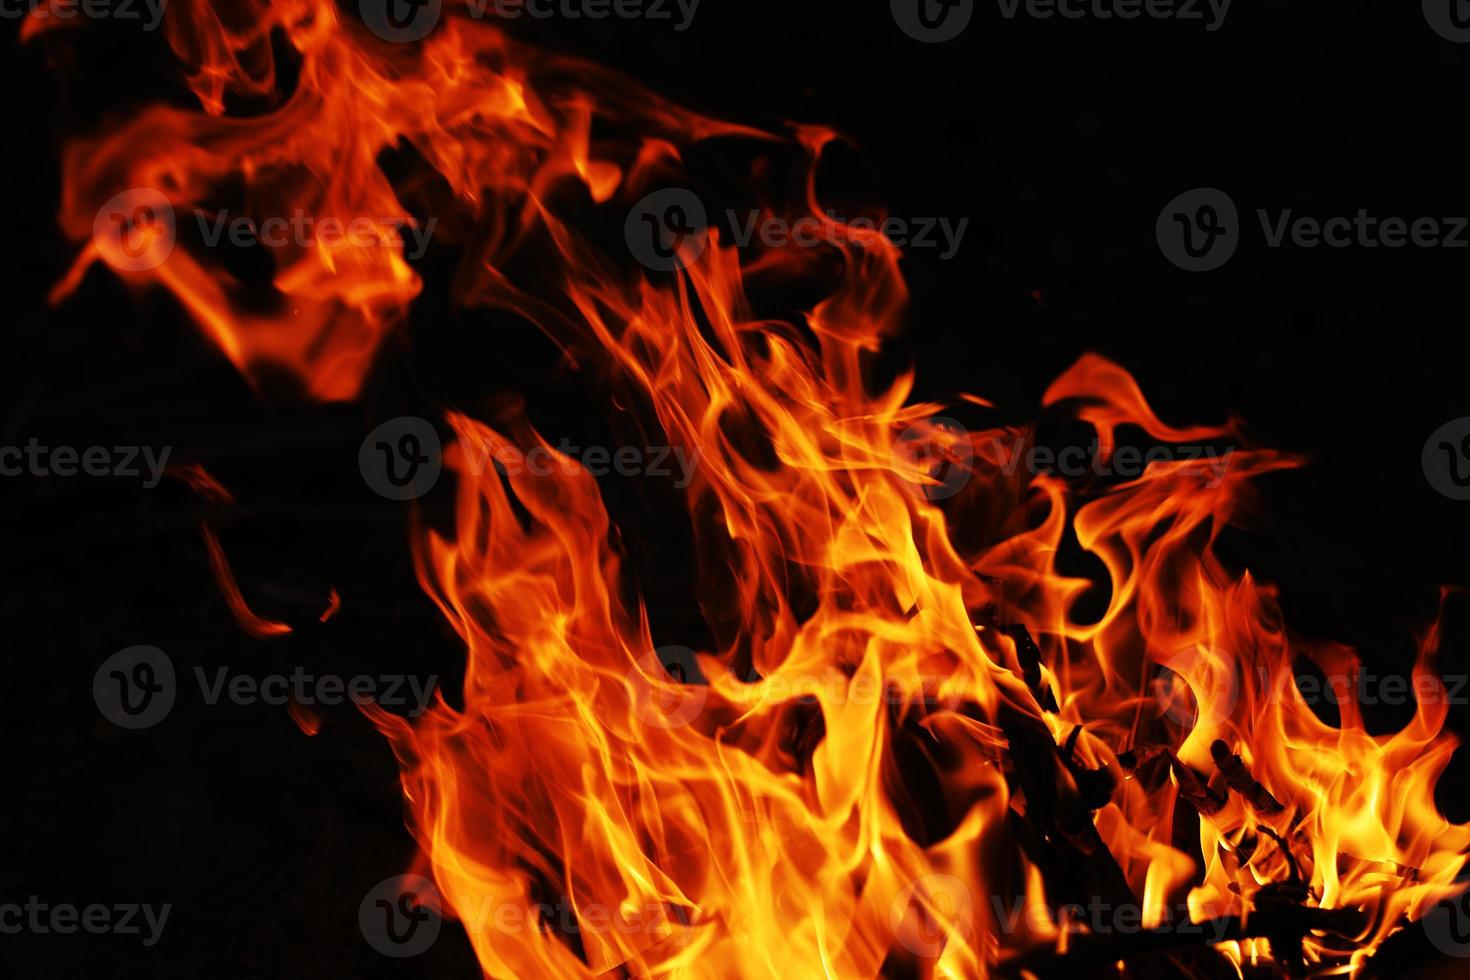 le feu crée des formes infinies lorsqu'il brûle. l'orange de la flamme et le fond noir créent des textures intéressantes. flammes de l'enfer. puissance brûlante. photo